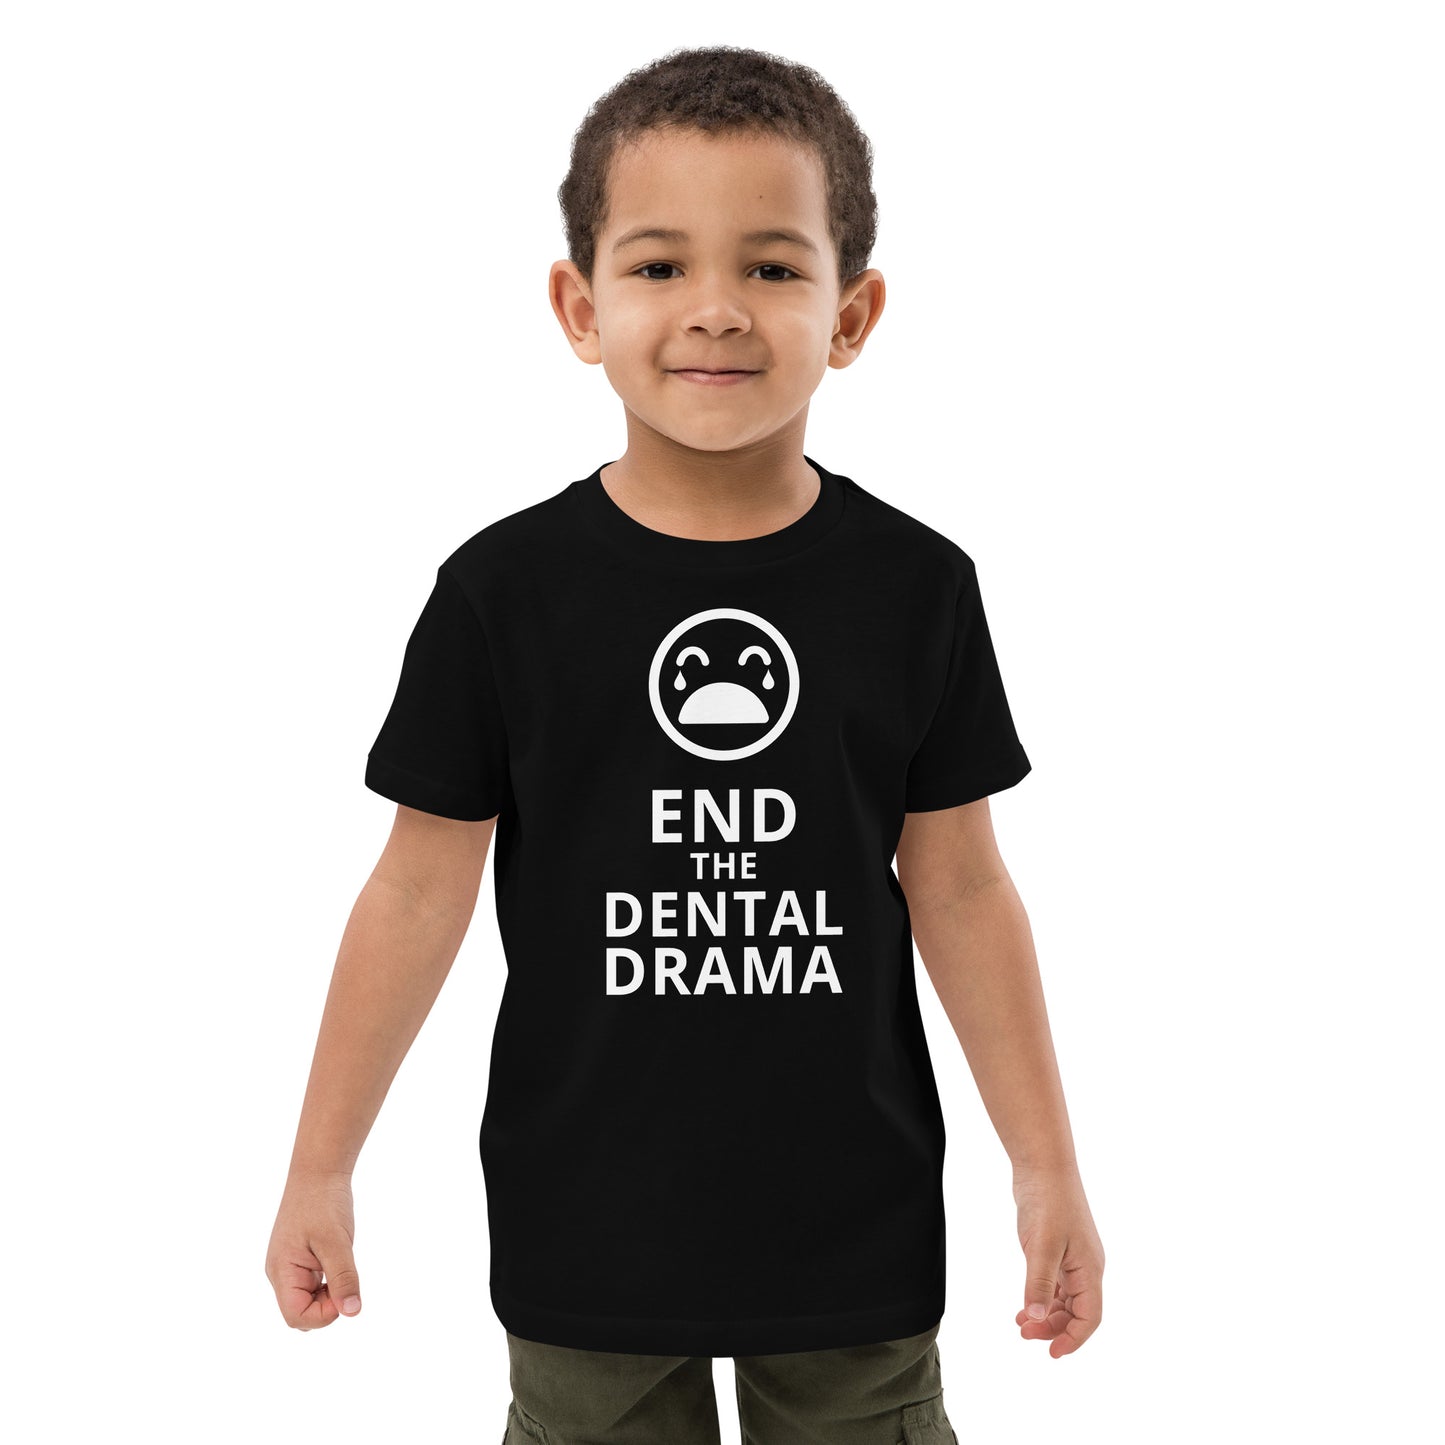 Dental Drama kids t-shirt